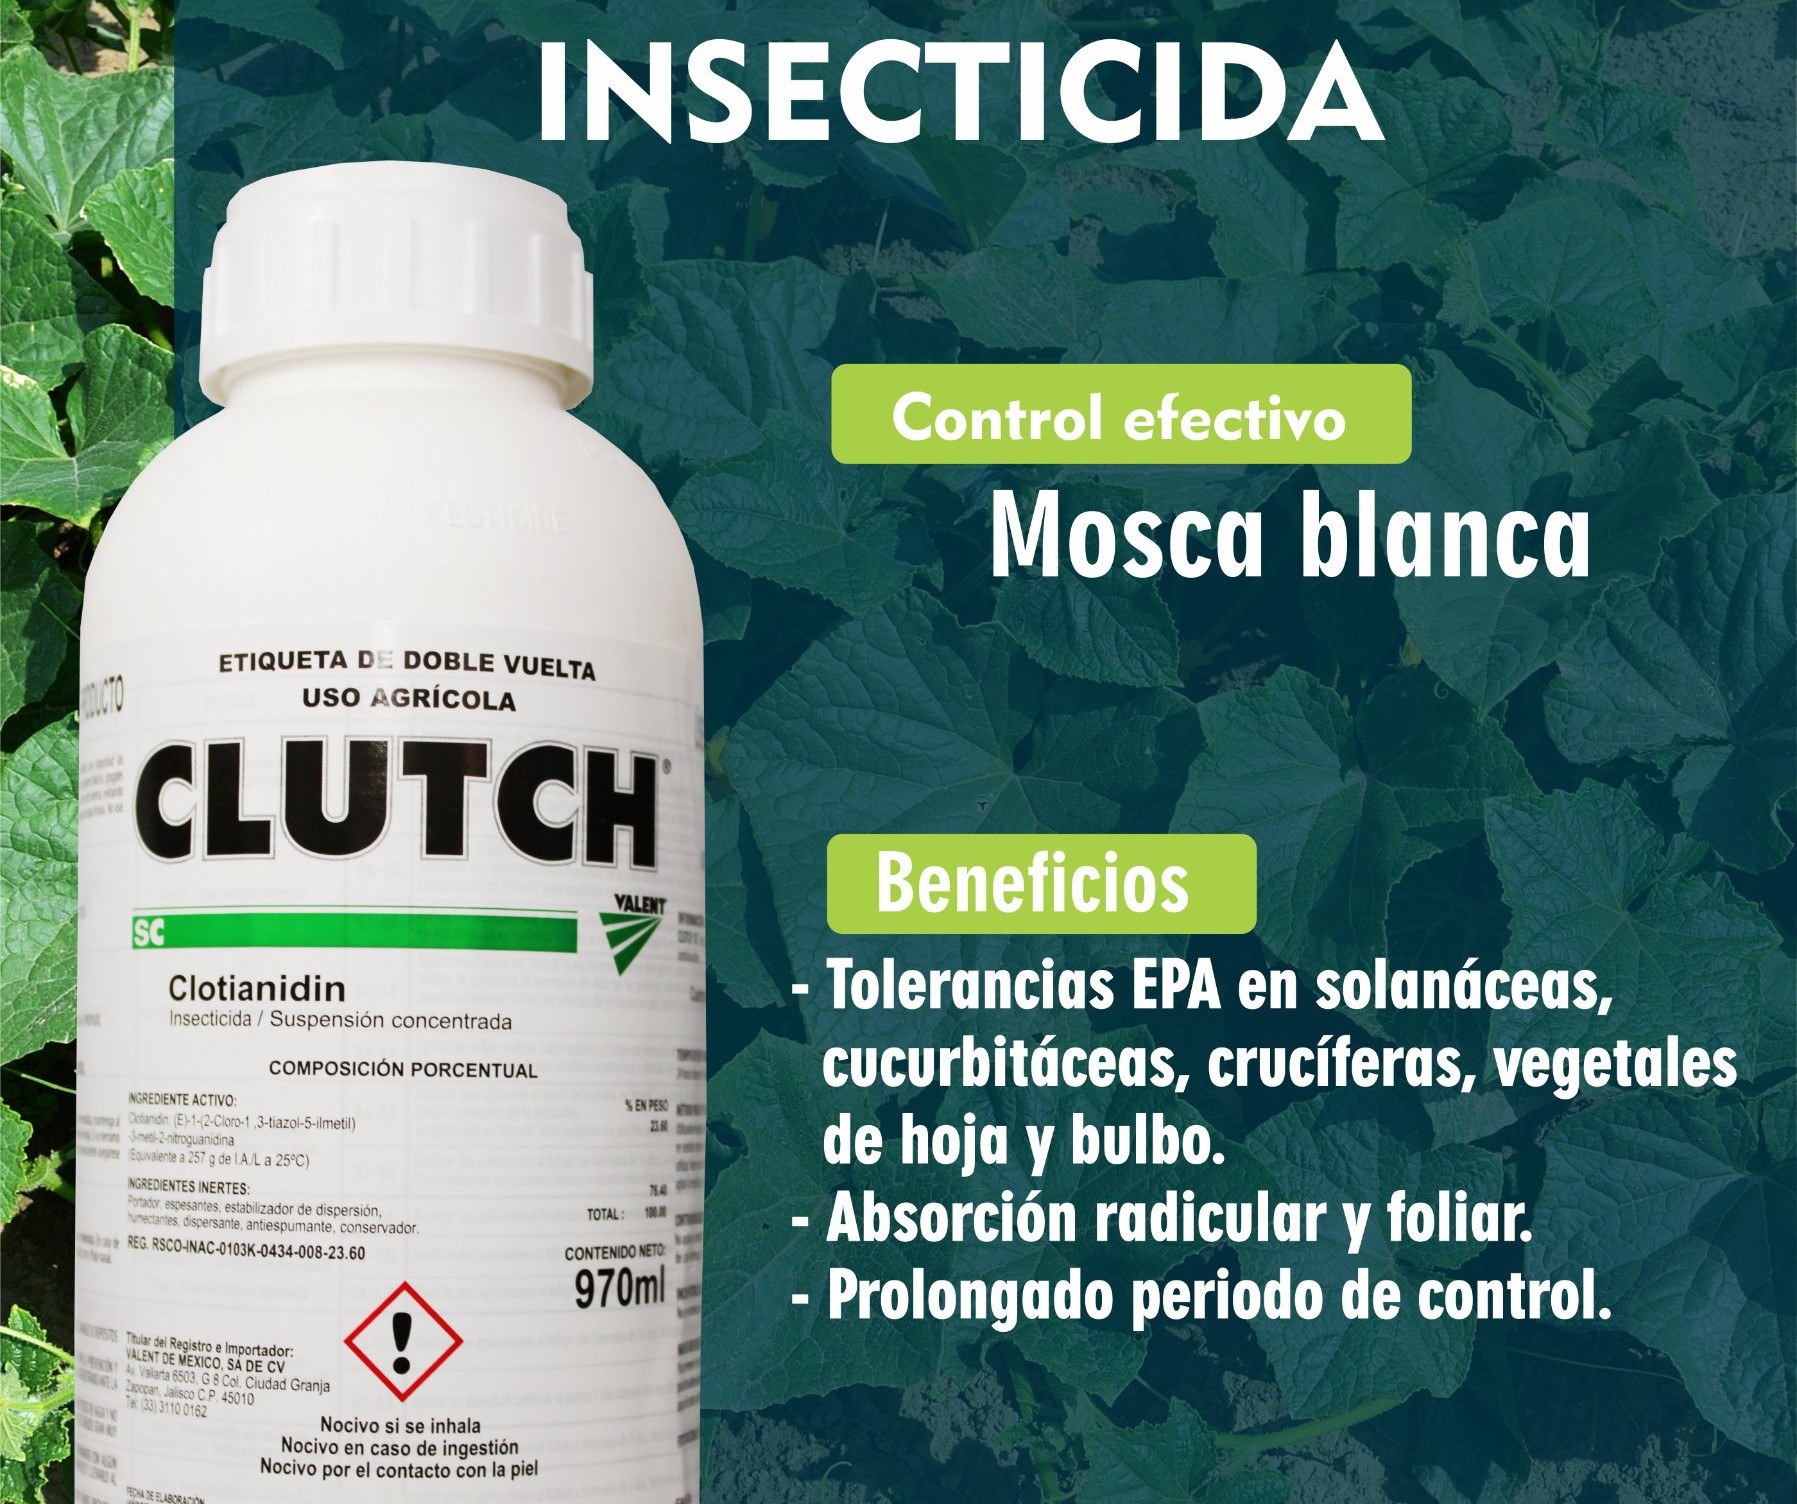 CLUTCH (producto para el campo)